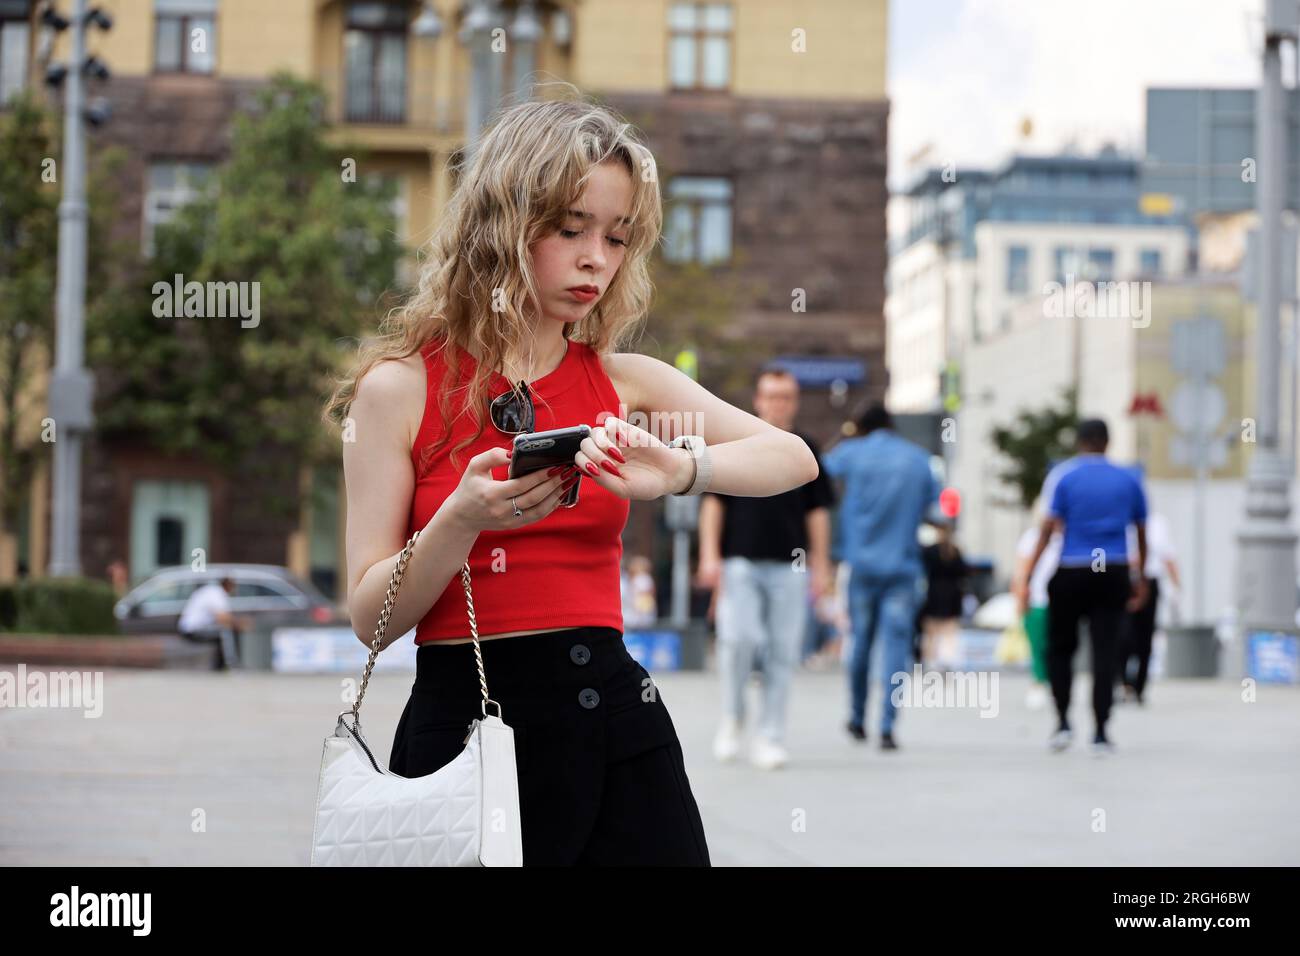 Ragazza attraente con capelli ricci biondi in piedi con lo smartphone in mano in strada, che usa il telefono cellulare nelle città estive Foto Stock